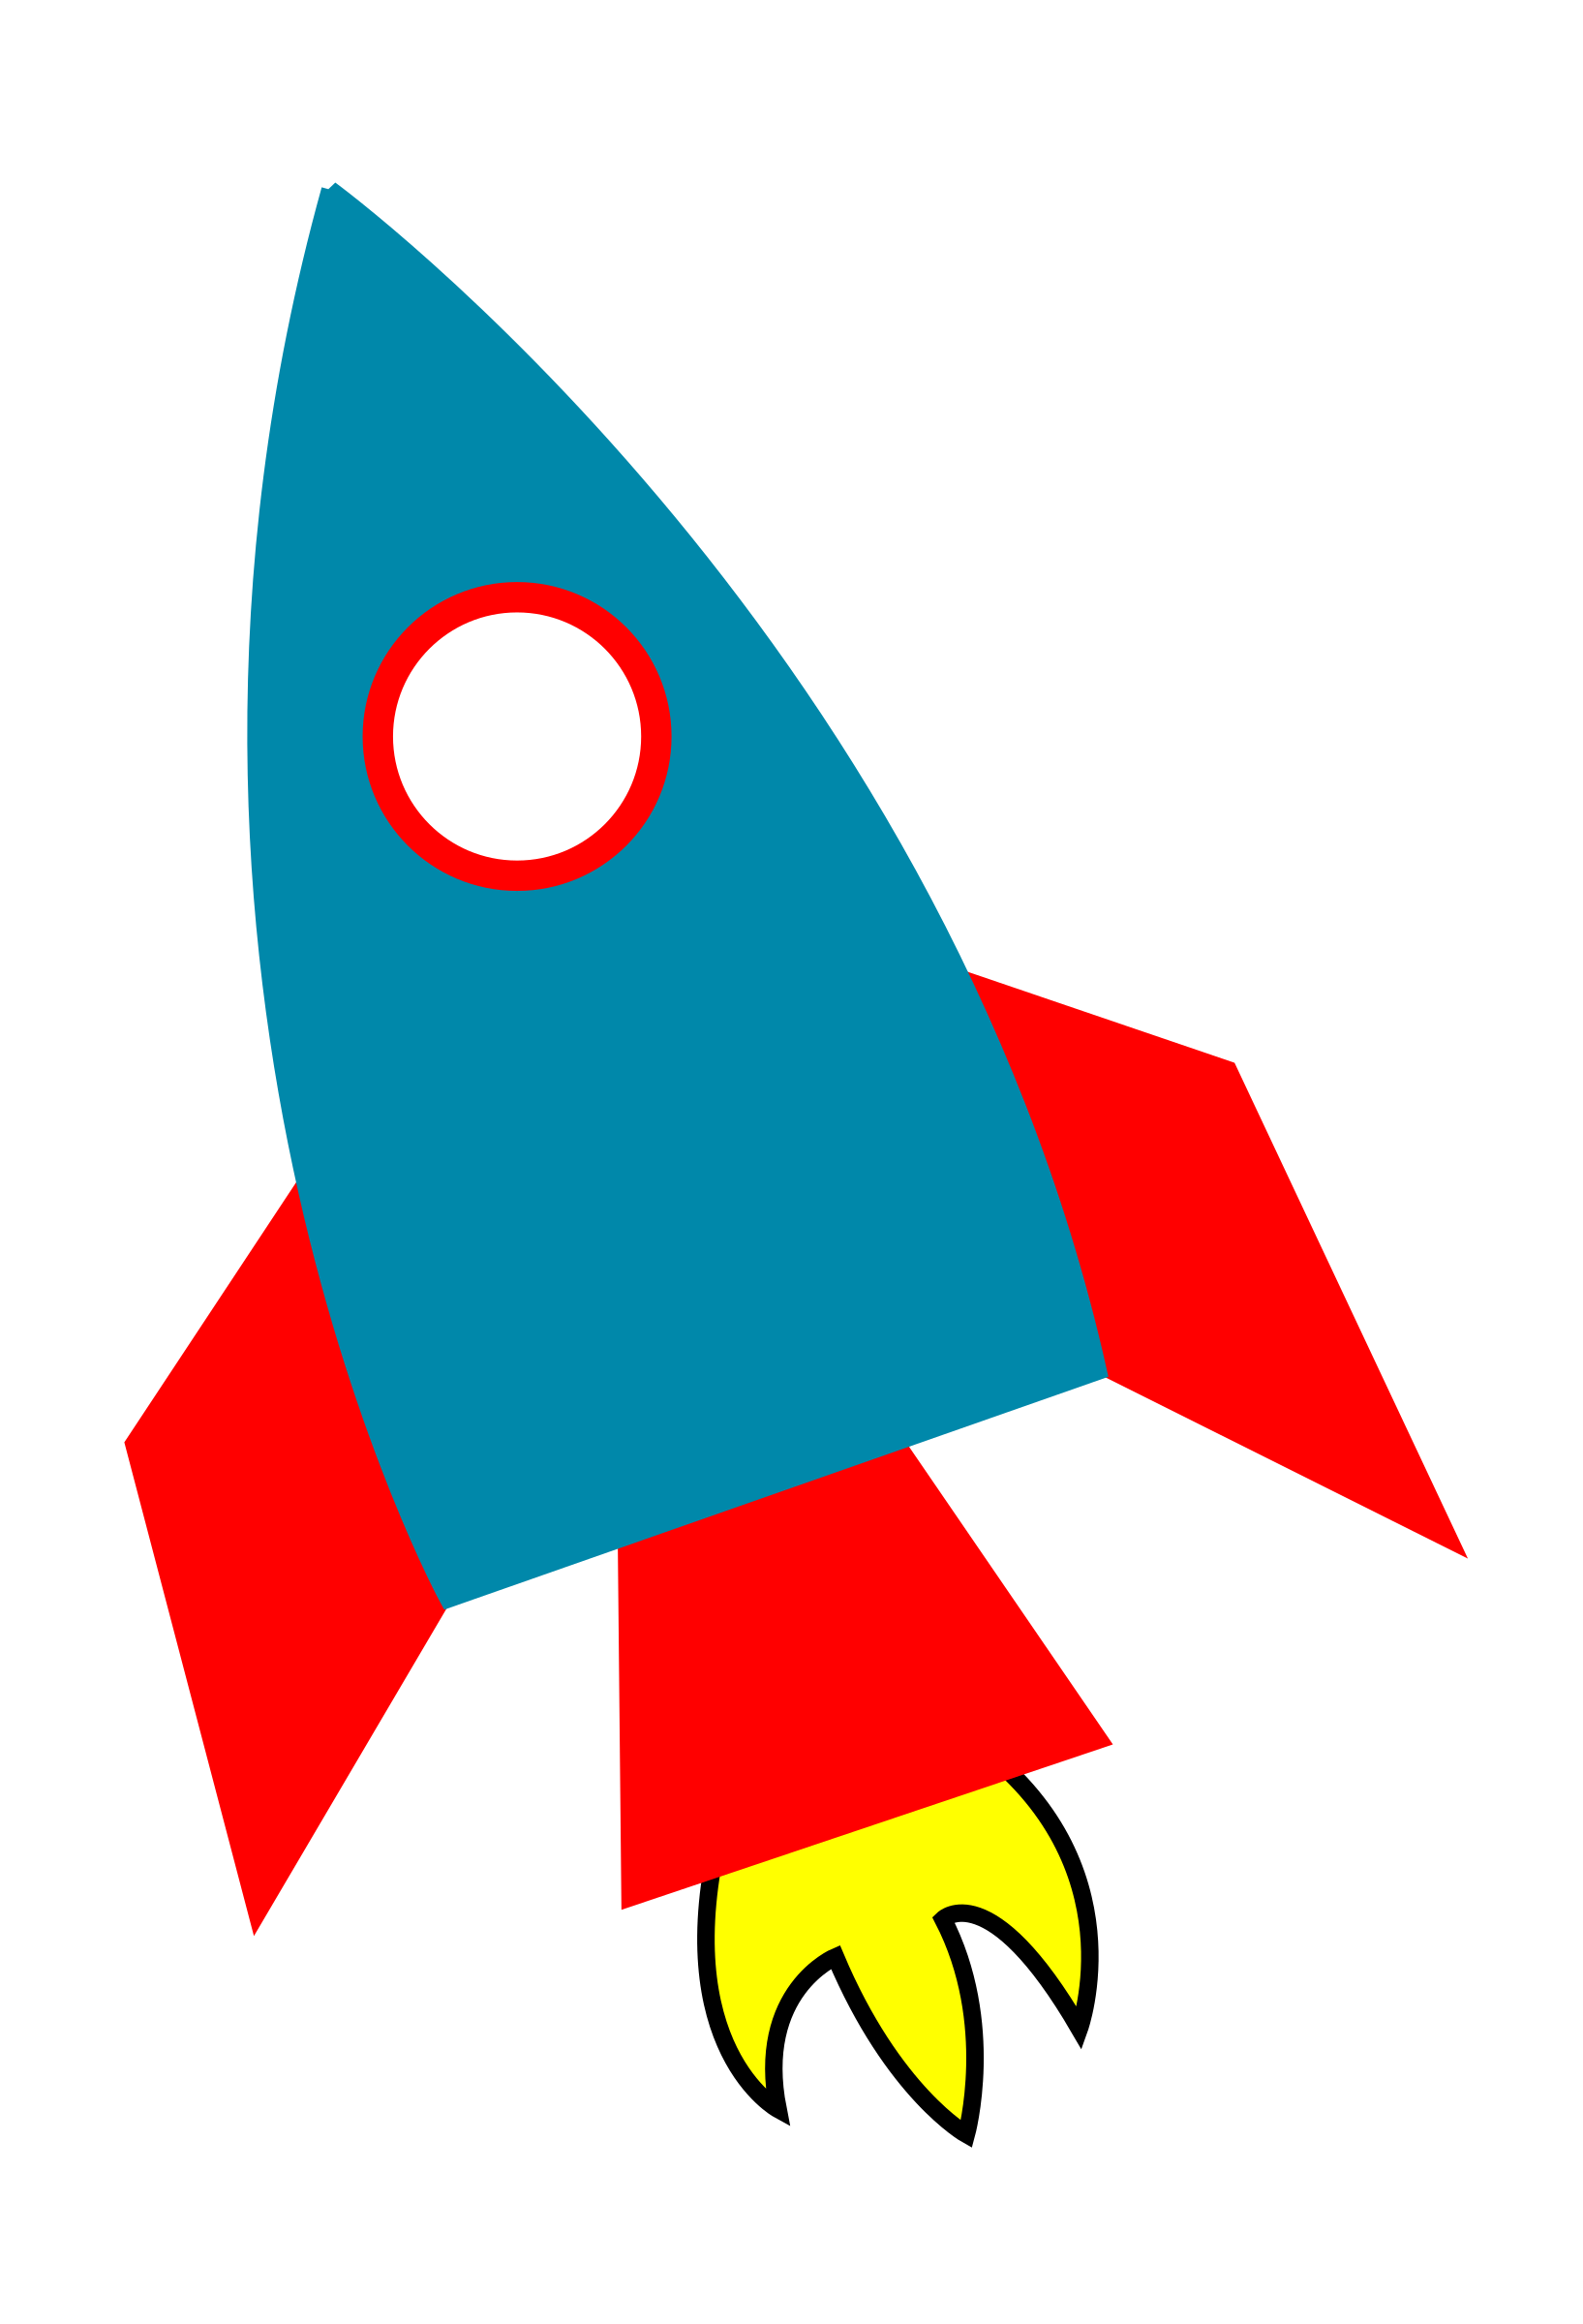 Картинка ракеты для детей цветная. Ракета для детей. Ракета рисунок. Аппликация. Ракета. Ракета картинка для детей.